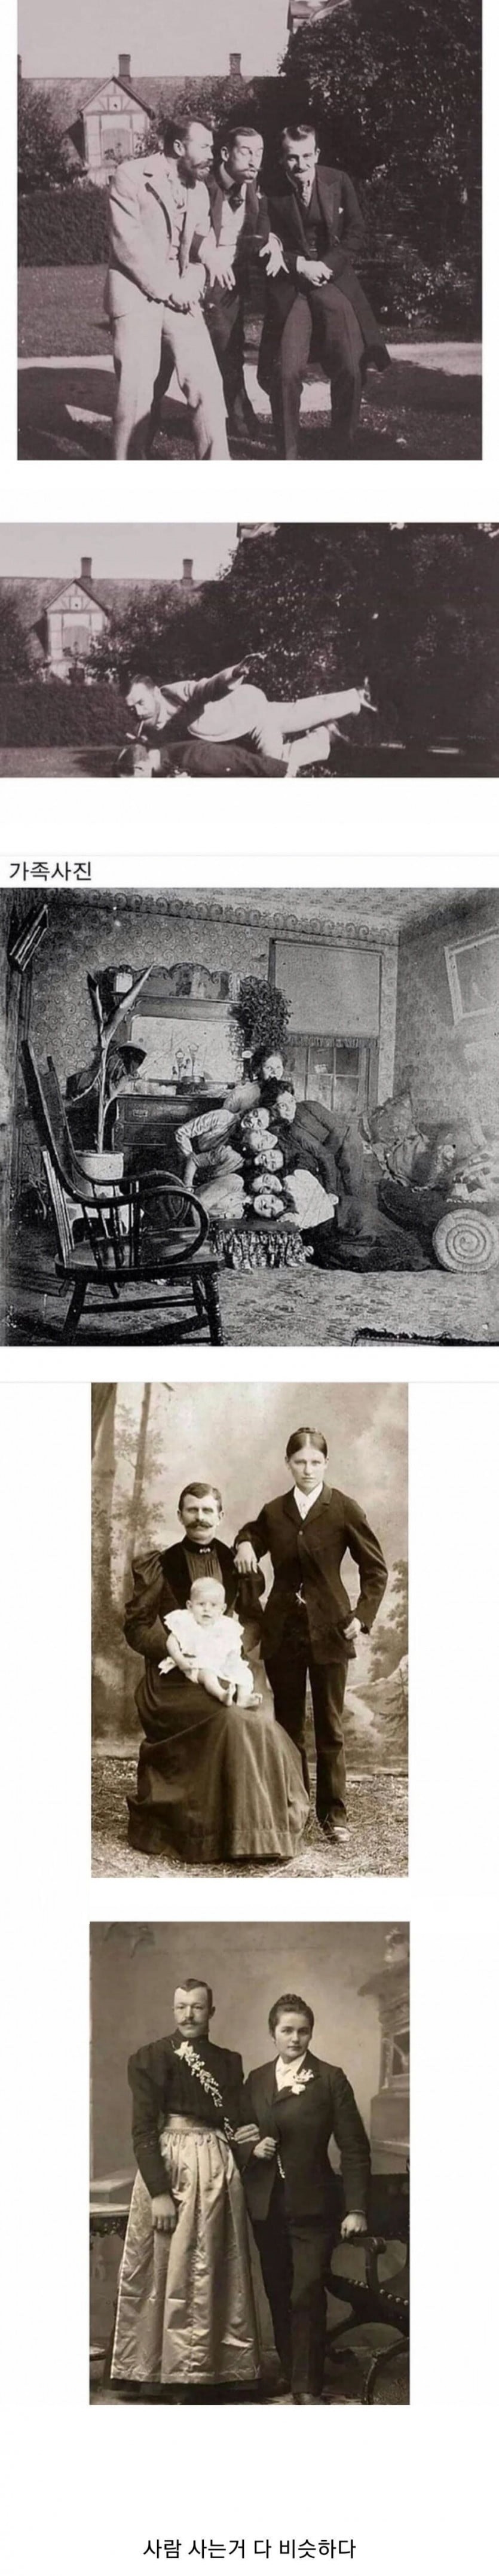 2 19세기 인싸의 사진.jpg